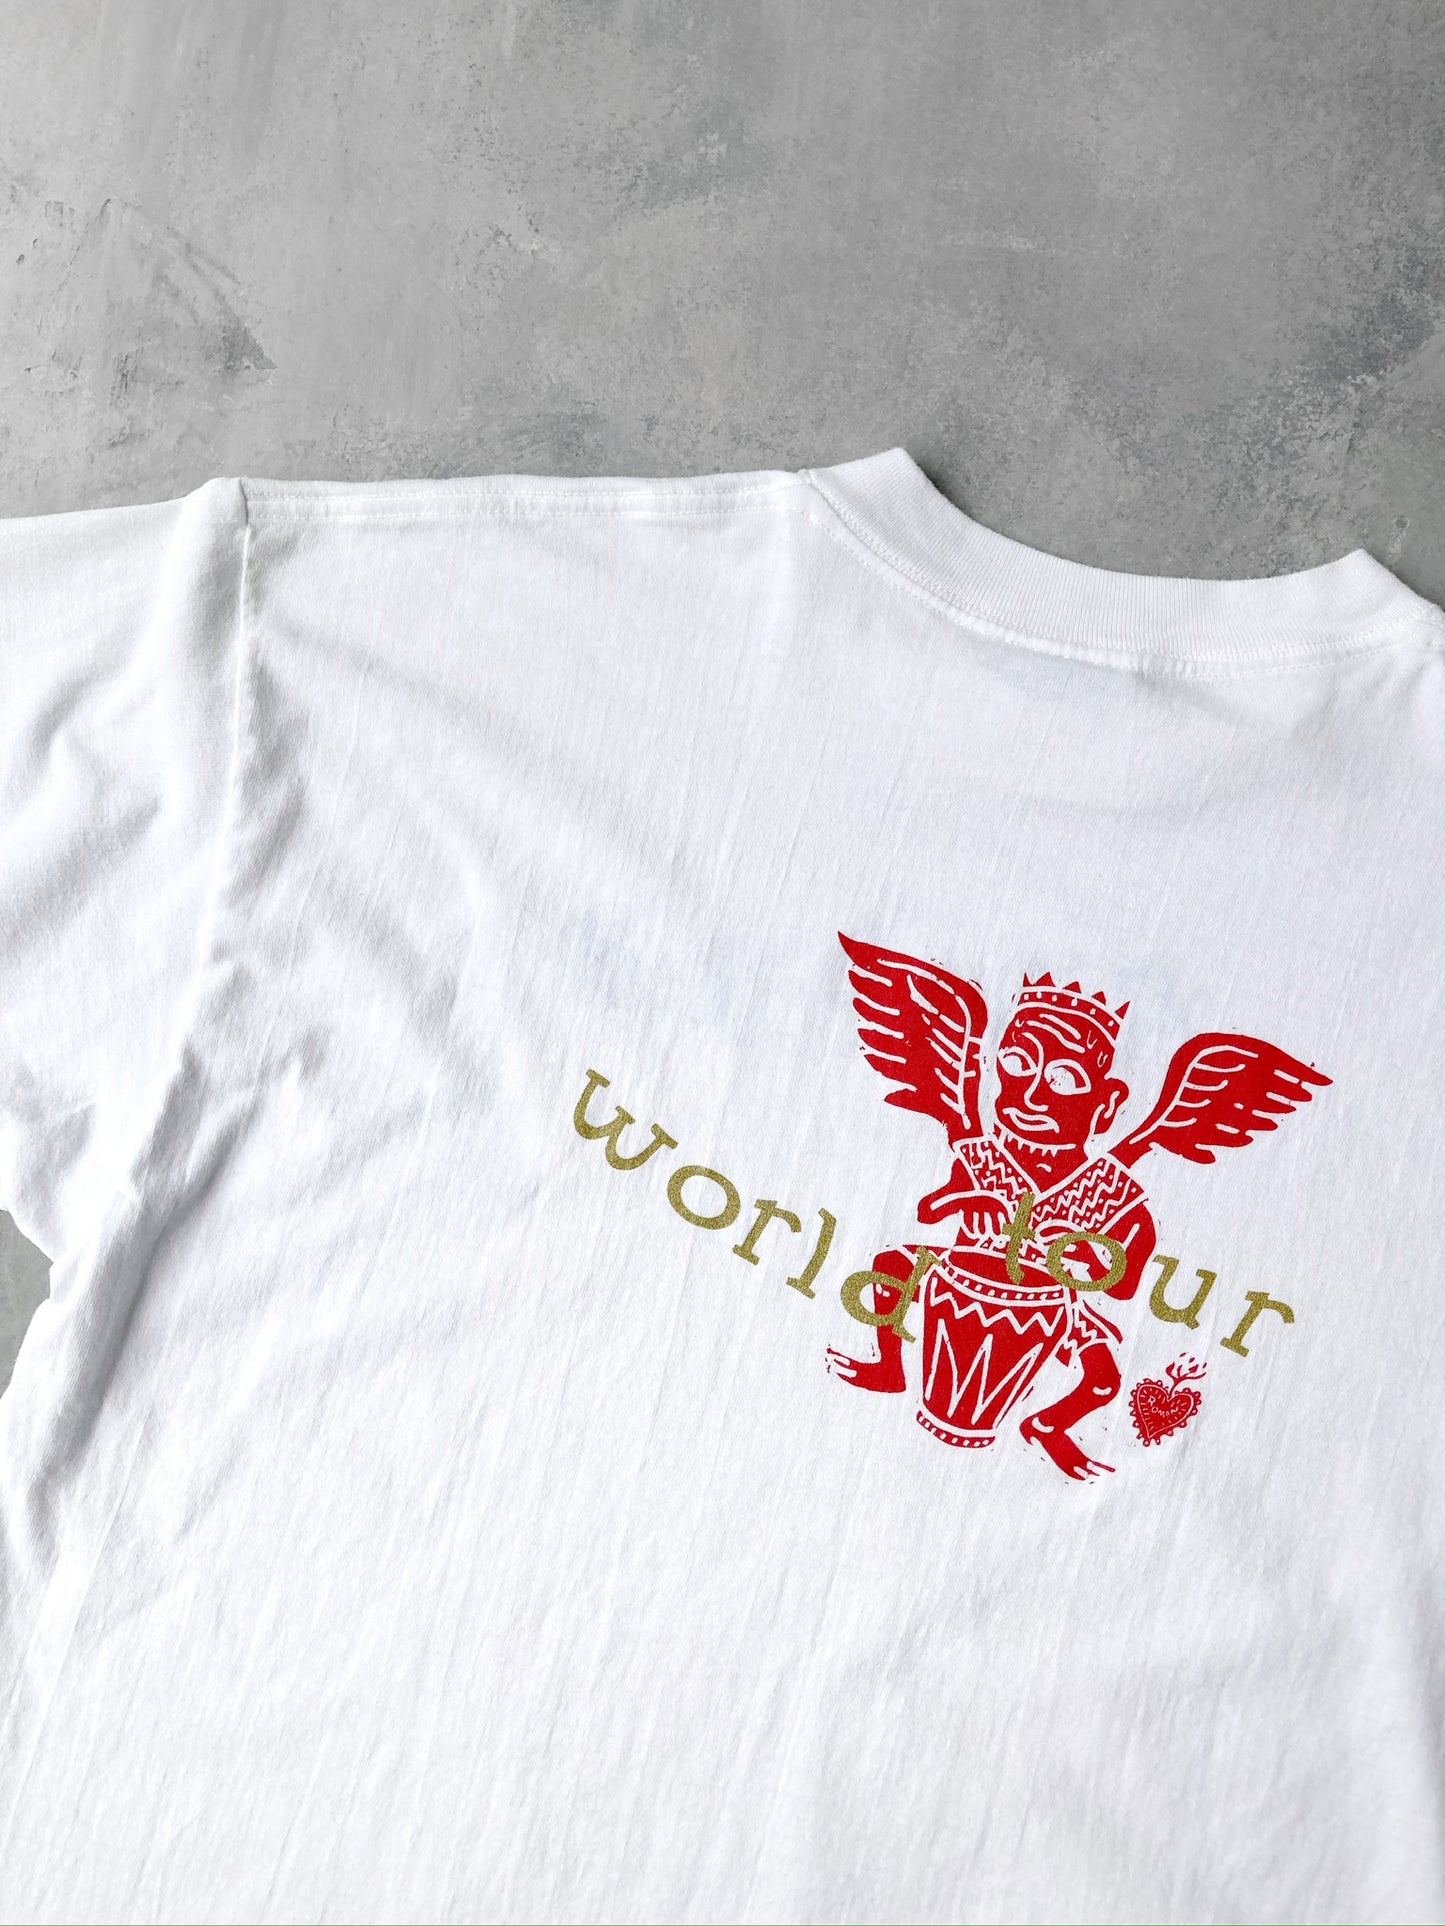 Santana World Tour T-Shirt 90's - XL